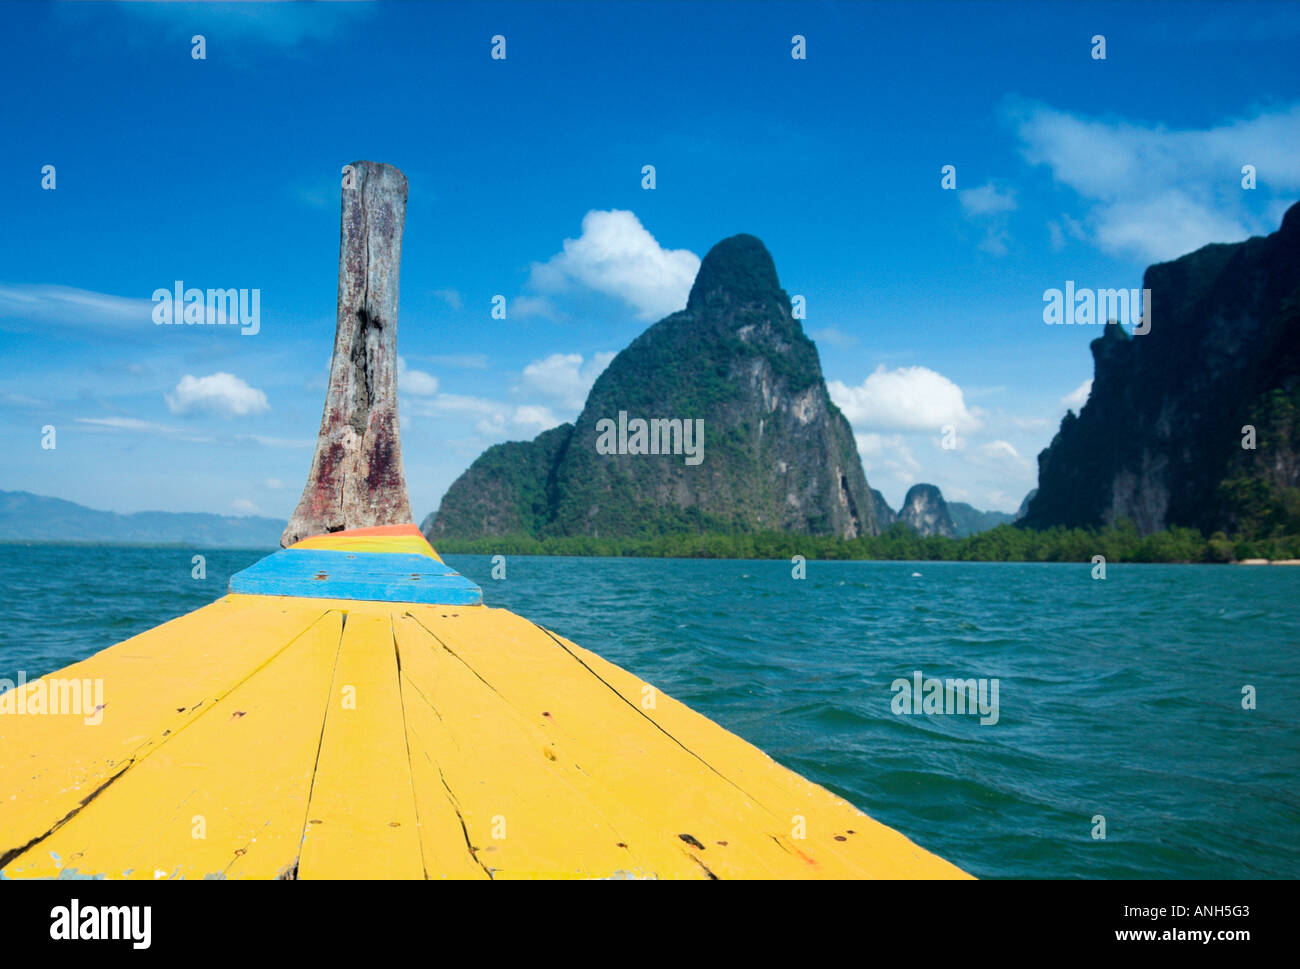 Ko Phing Kan (James Bond Island), Ao Phang-Nga (Phang-Nga Bay), Thailand Stock Photo